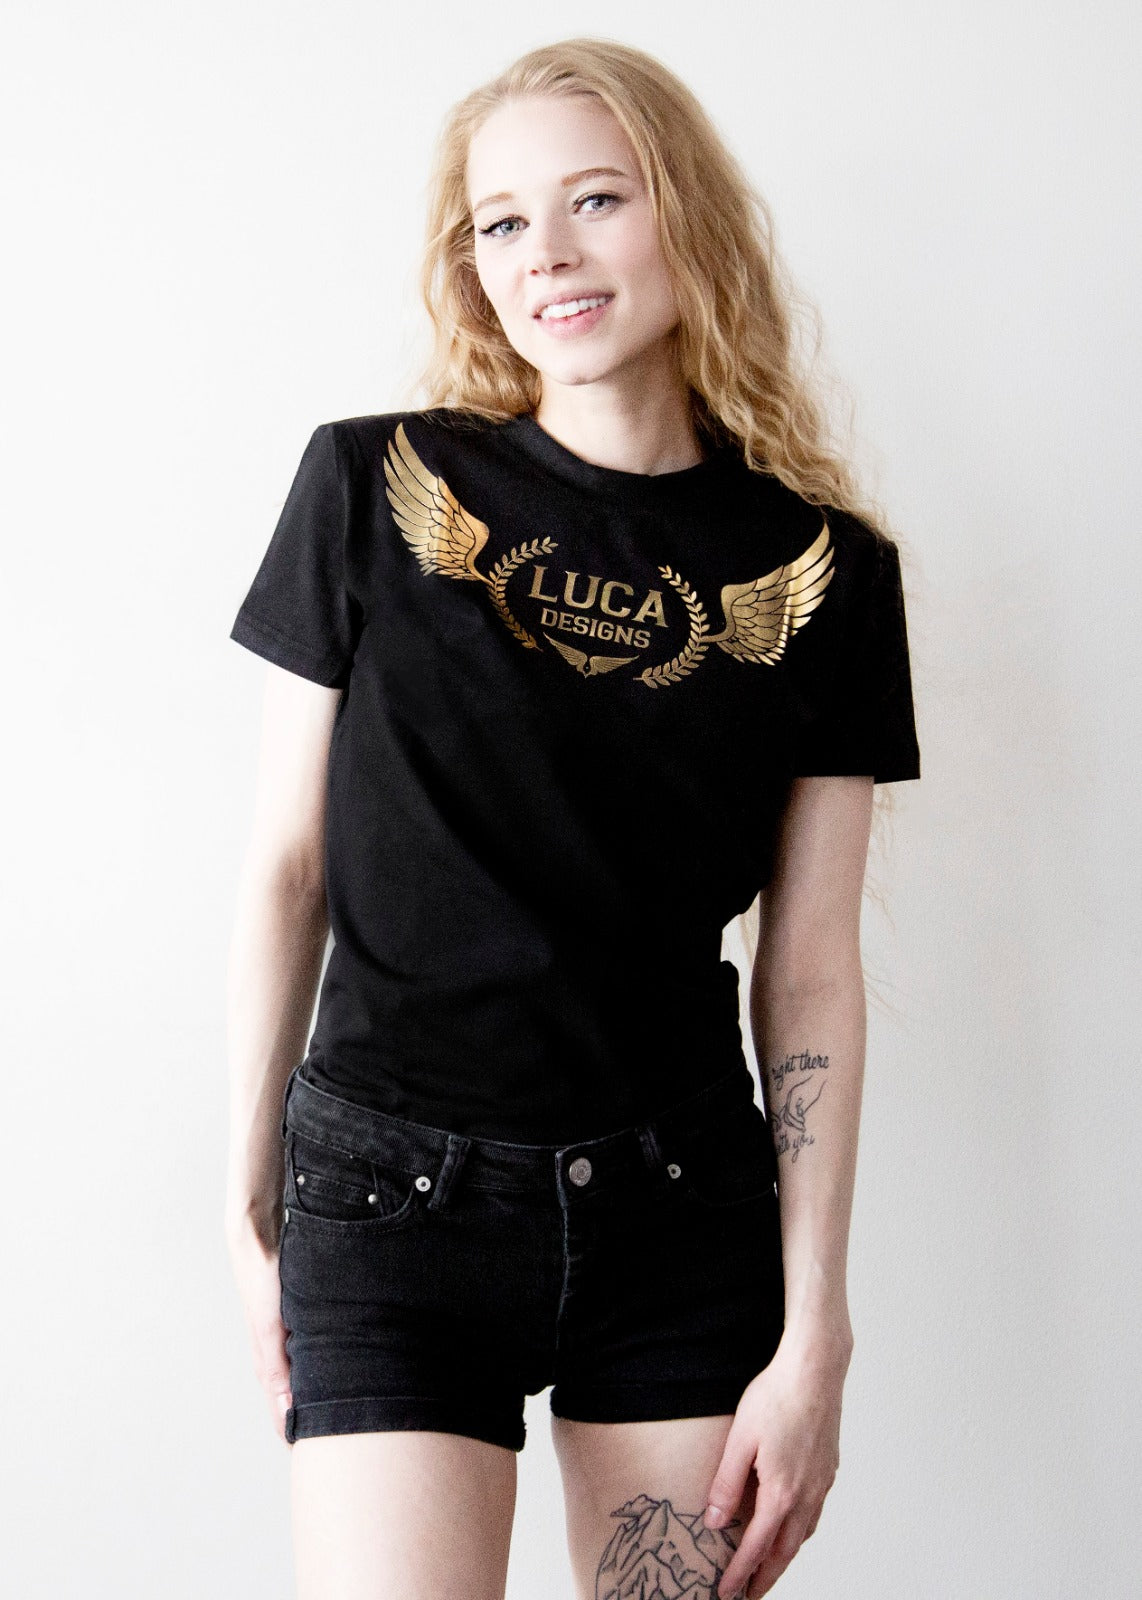 Womens Black Designer Tshirt with Chrome Luca Designs Logo Brand emblem Cotton